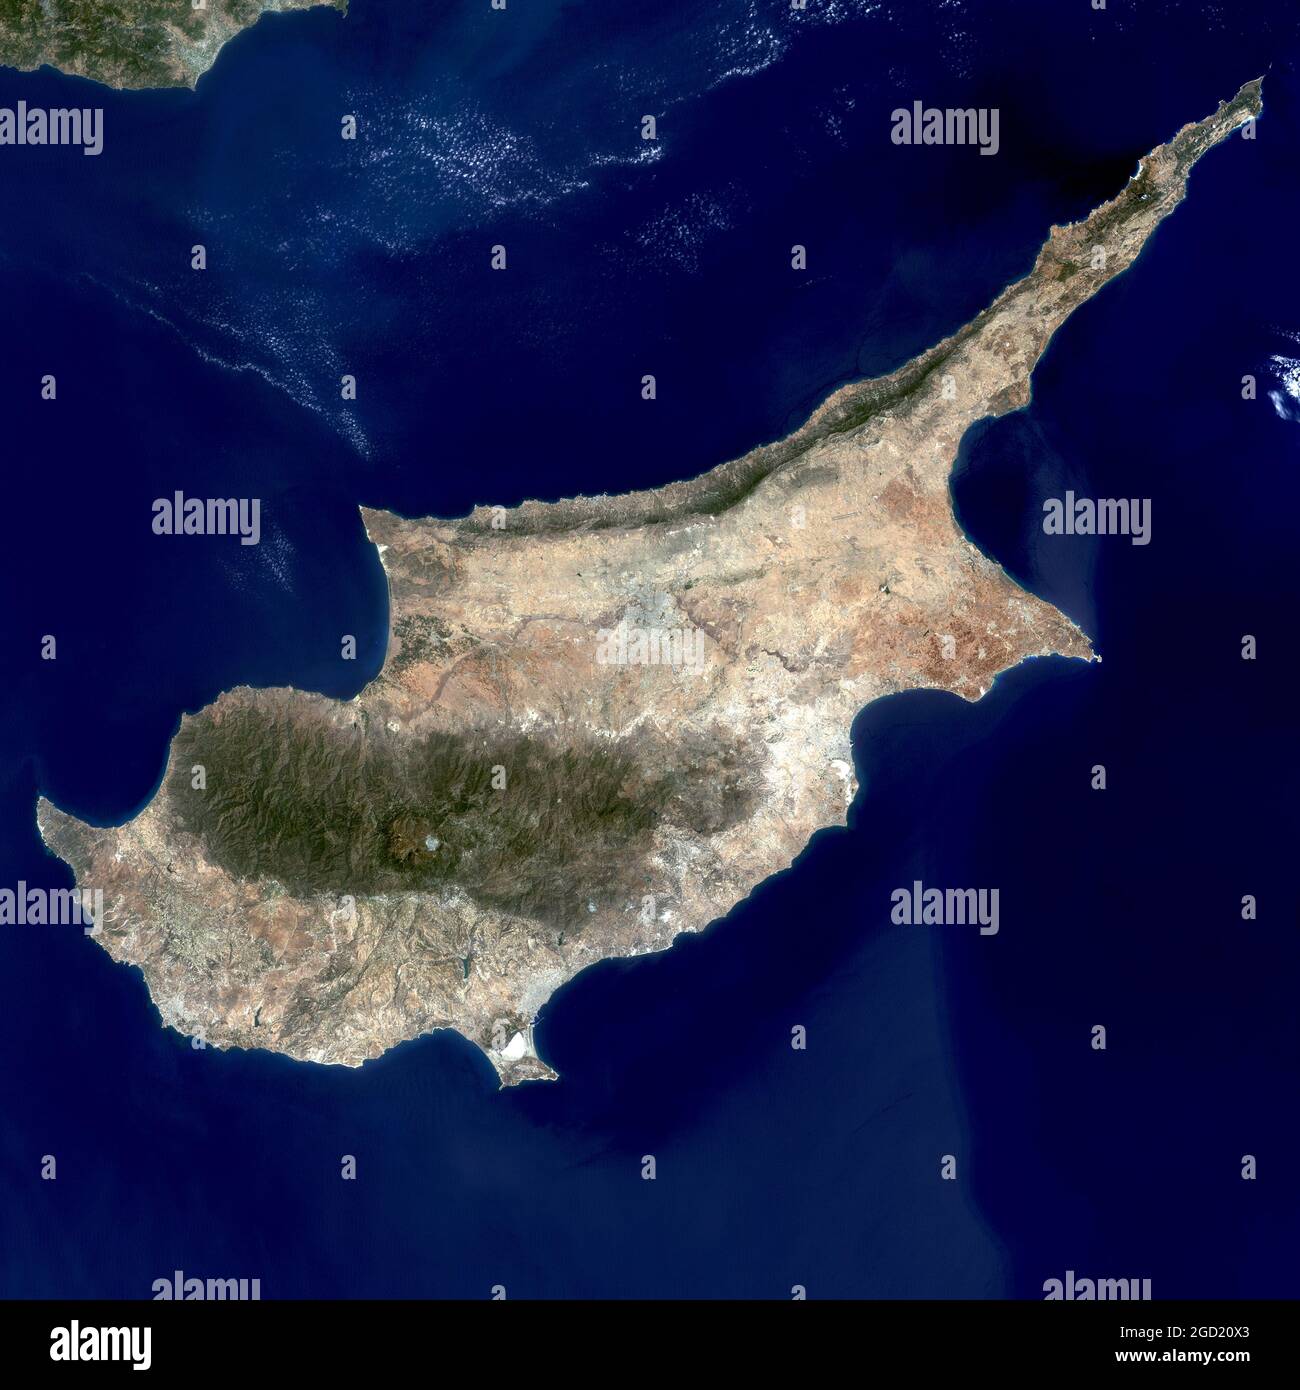 Satellite image of the island of Cyprus. NASA GSFC Landsat/LDCM EPO Team. Published January 11, 2012. Data acquired July 1, 2002. Public domain NASA Stock Photo